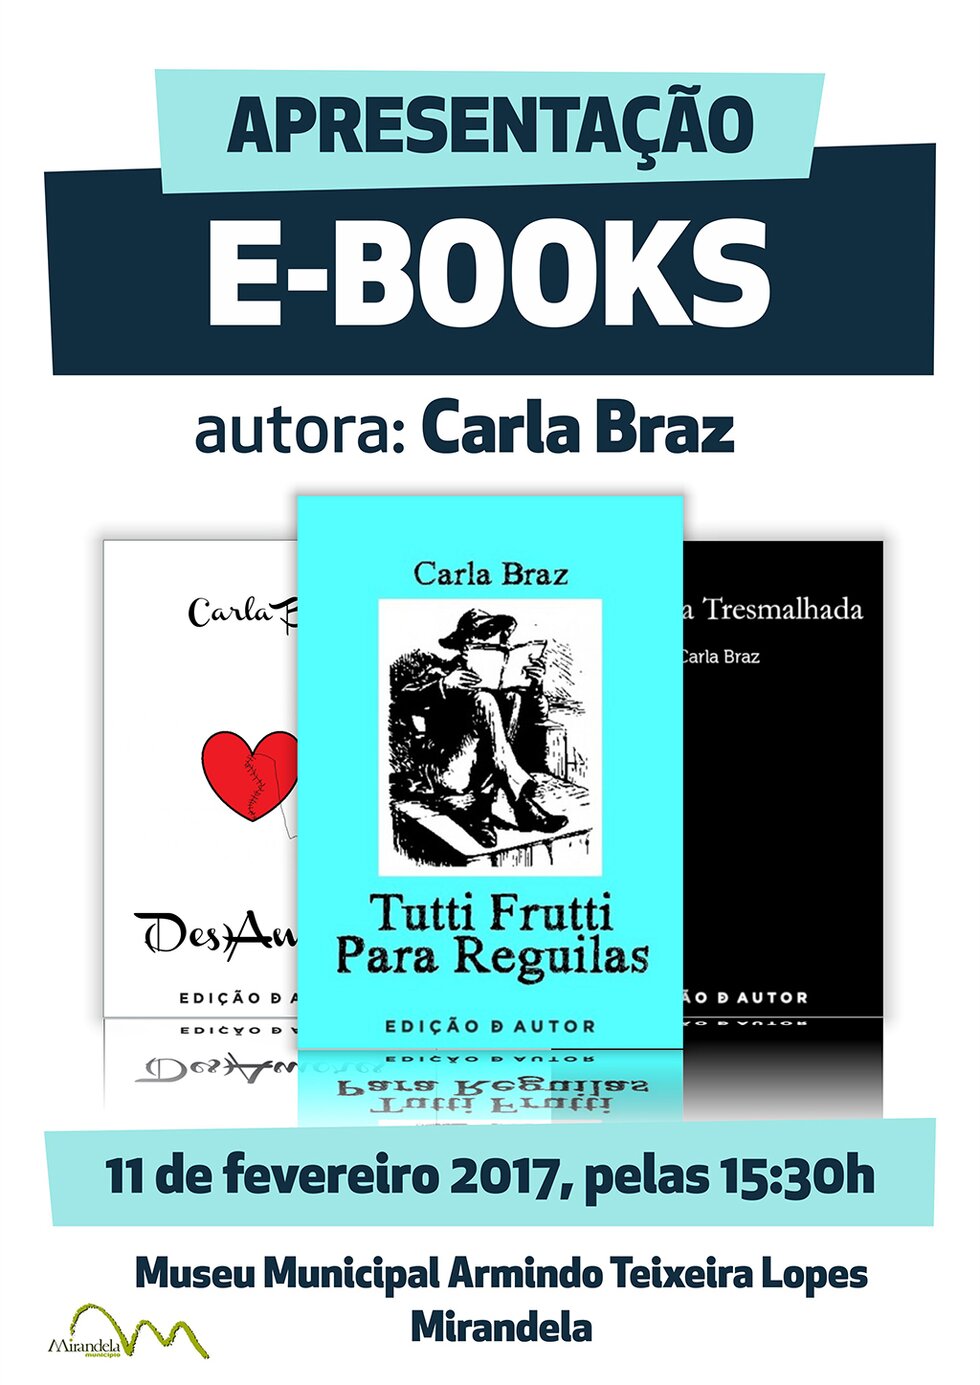 11_FEV_apresenta_ao_de_livro_-_E-books-_Carla_Braz